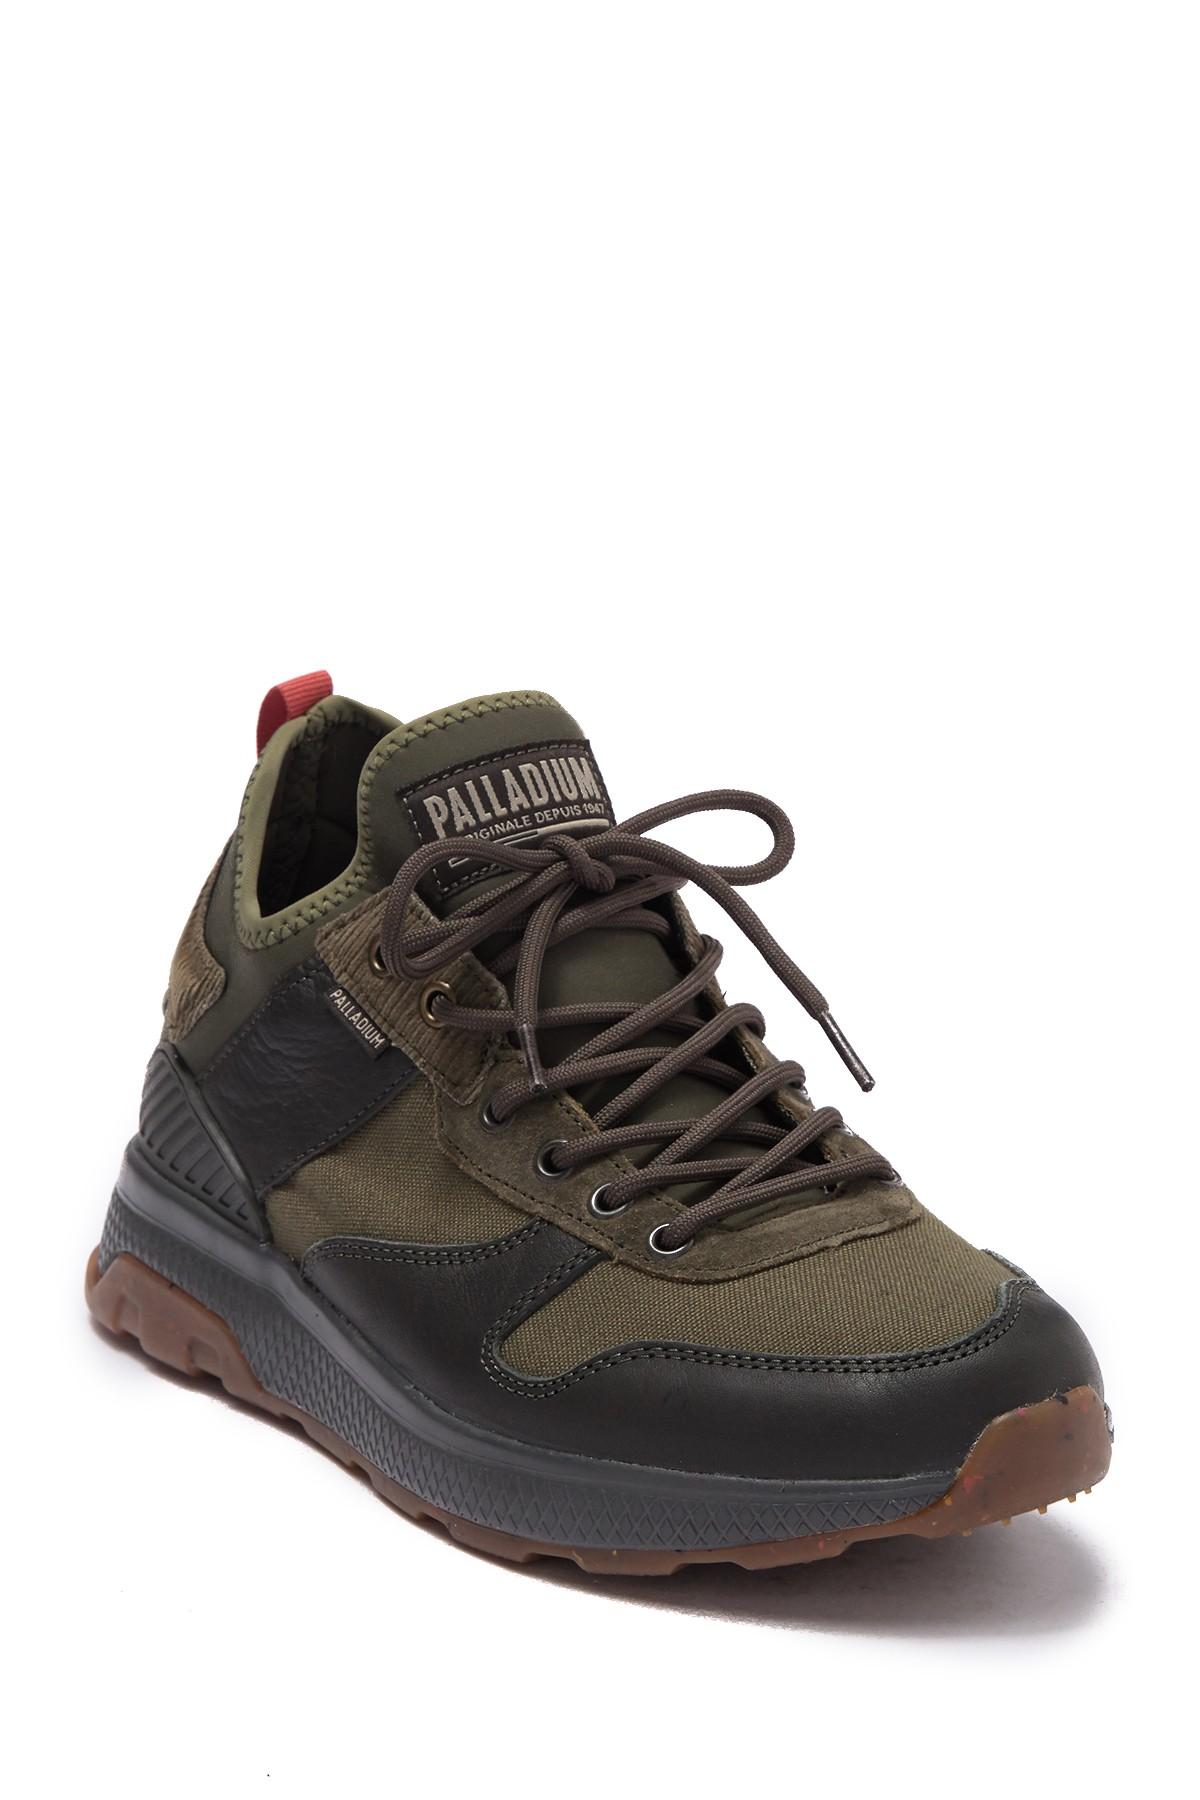 Palladium AX Eon Army Runner Shoes